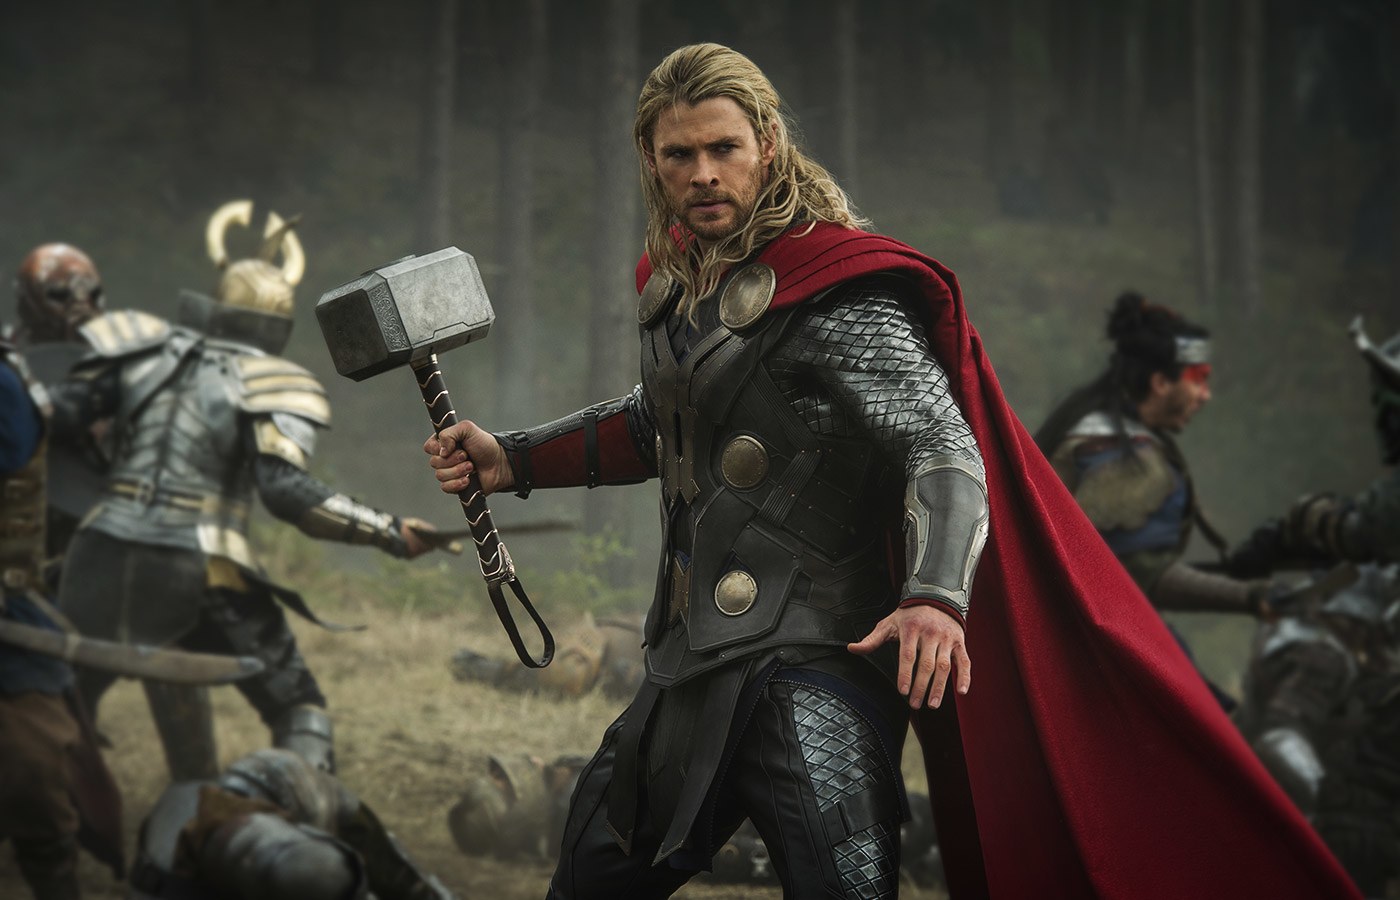 Marvel revela idade de Thor e deixa fãs de queixo caído